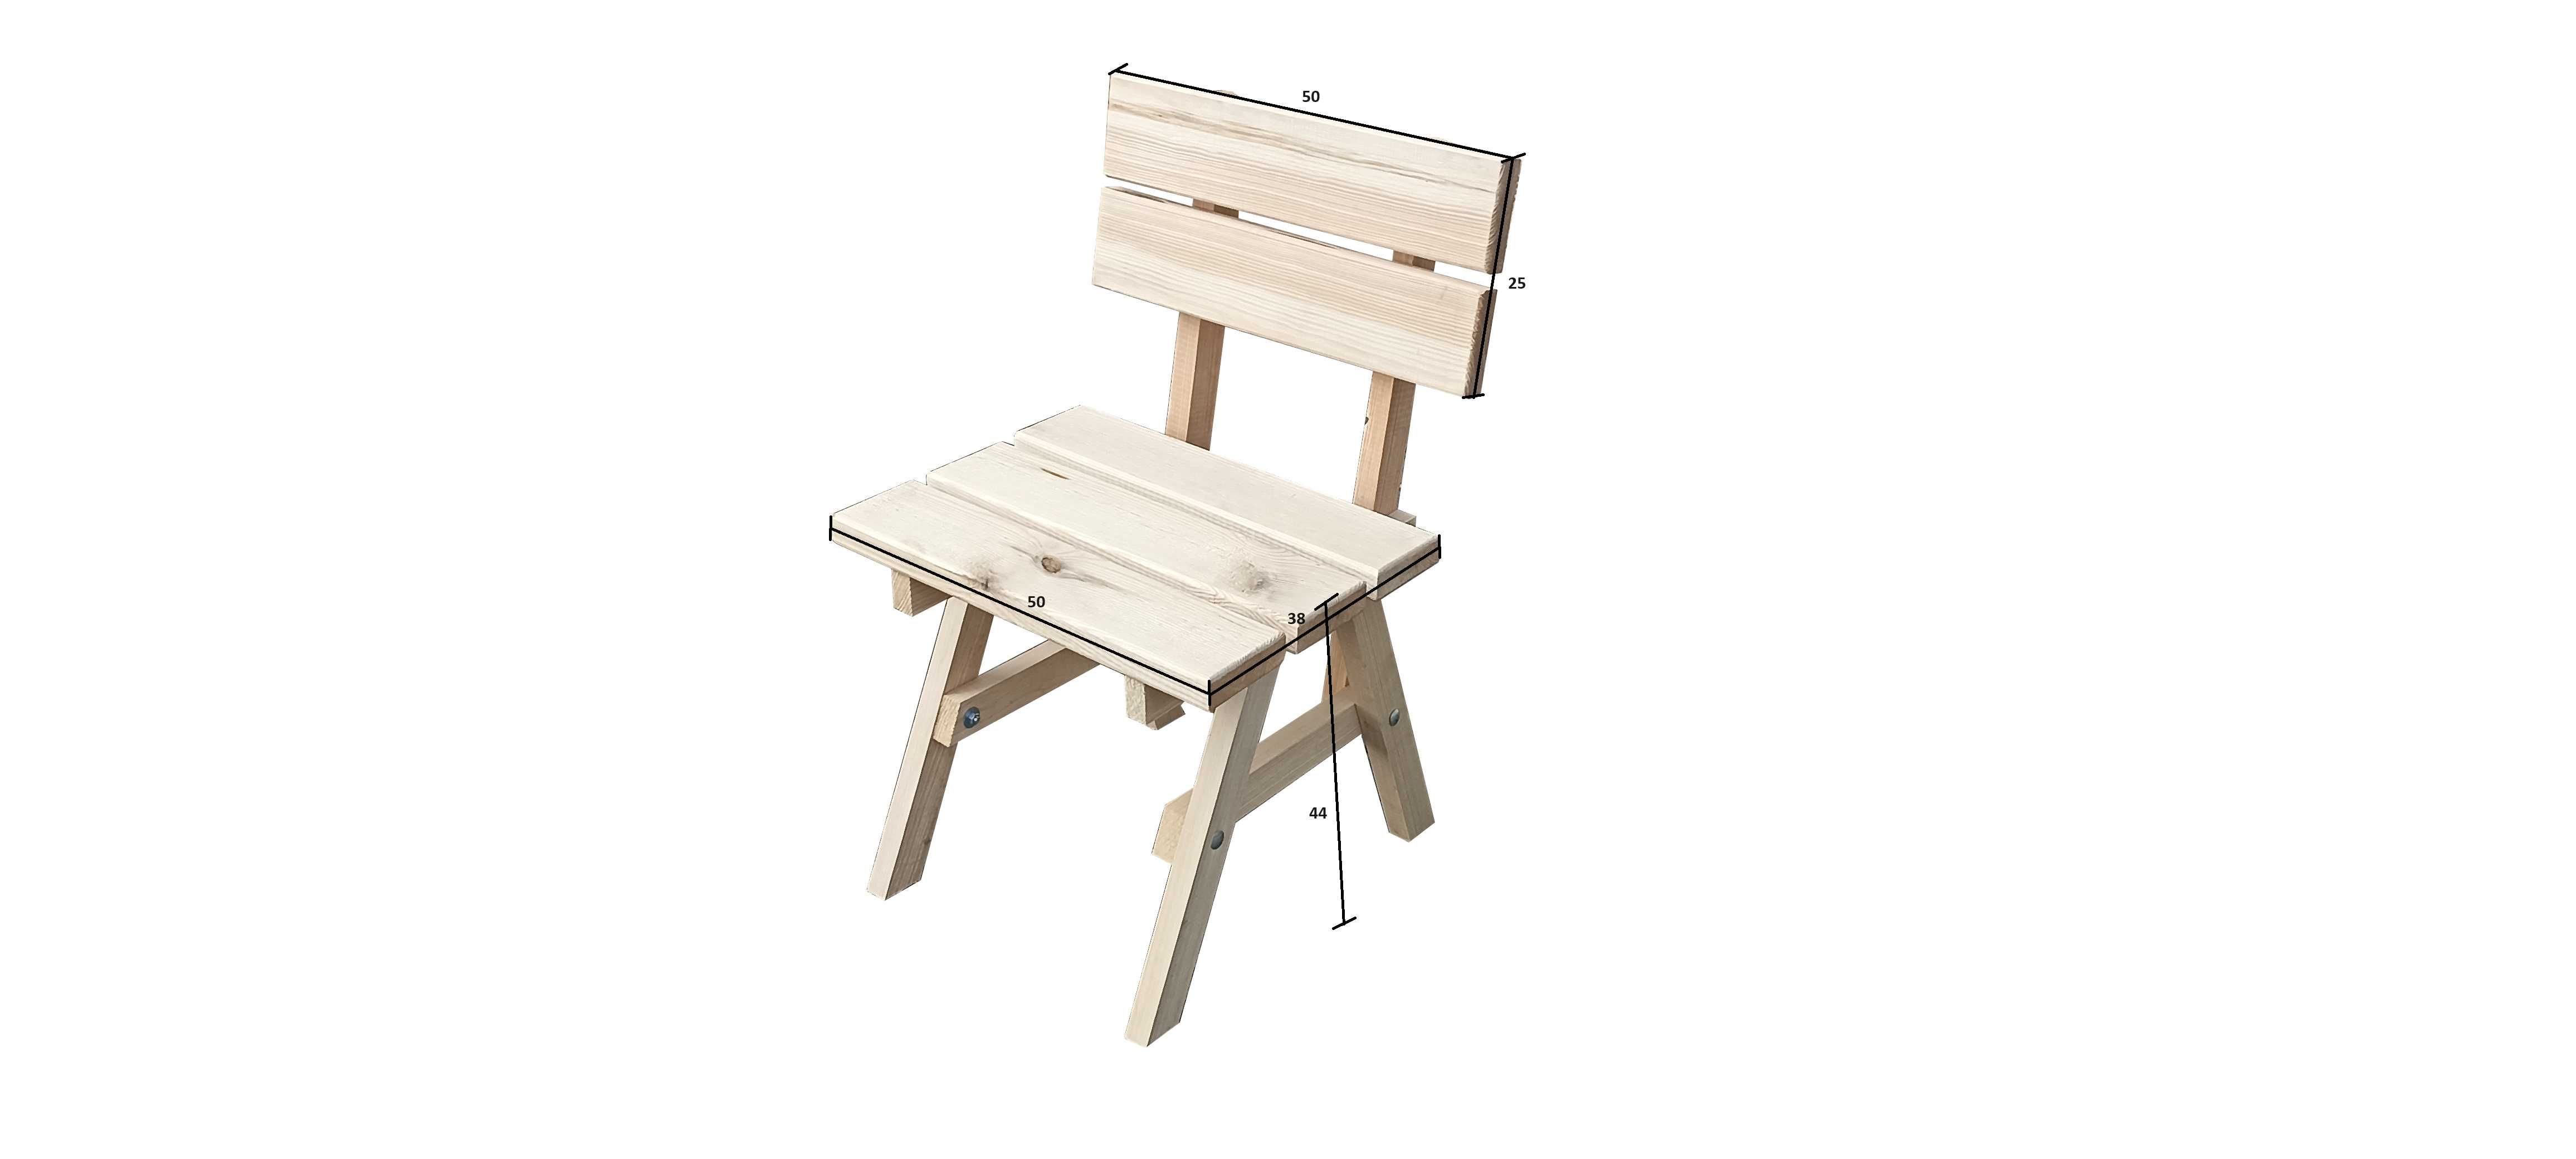 Stolik kawowy z krzesłami balkonowy ogrodowy biesiadny drewniany nowy